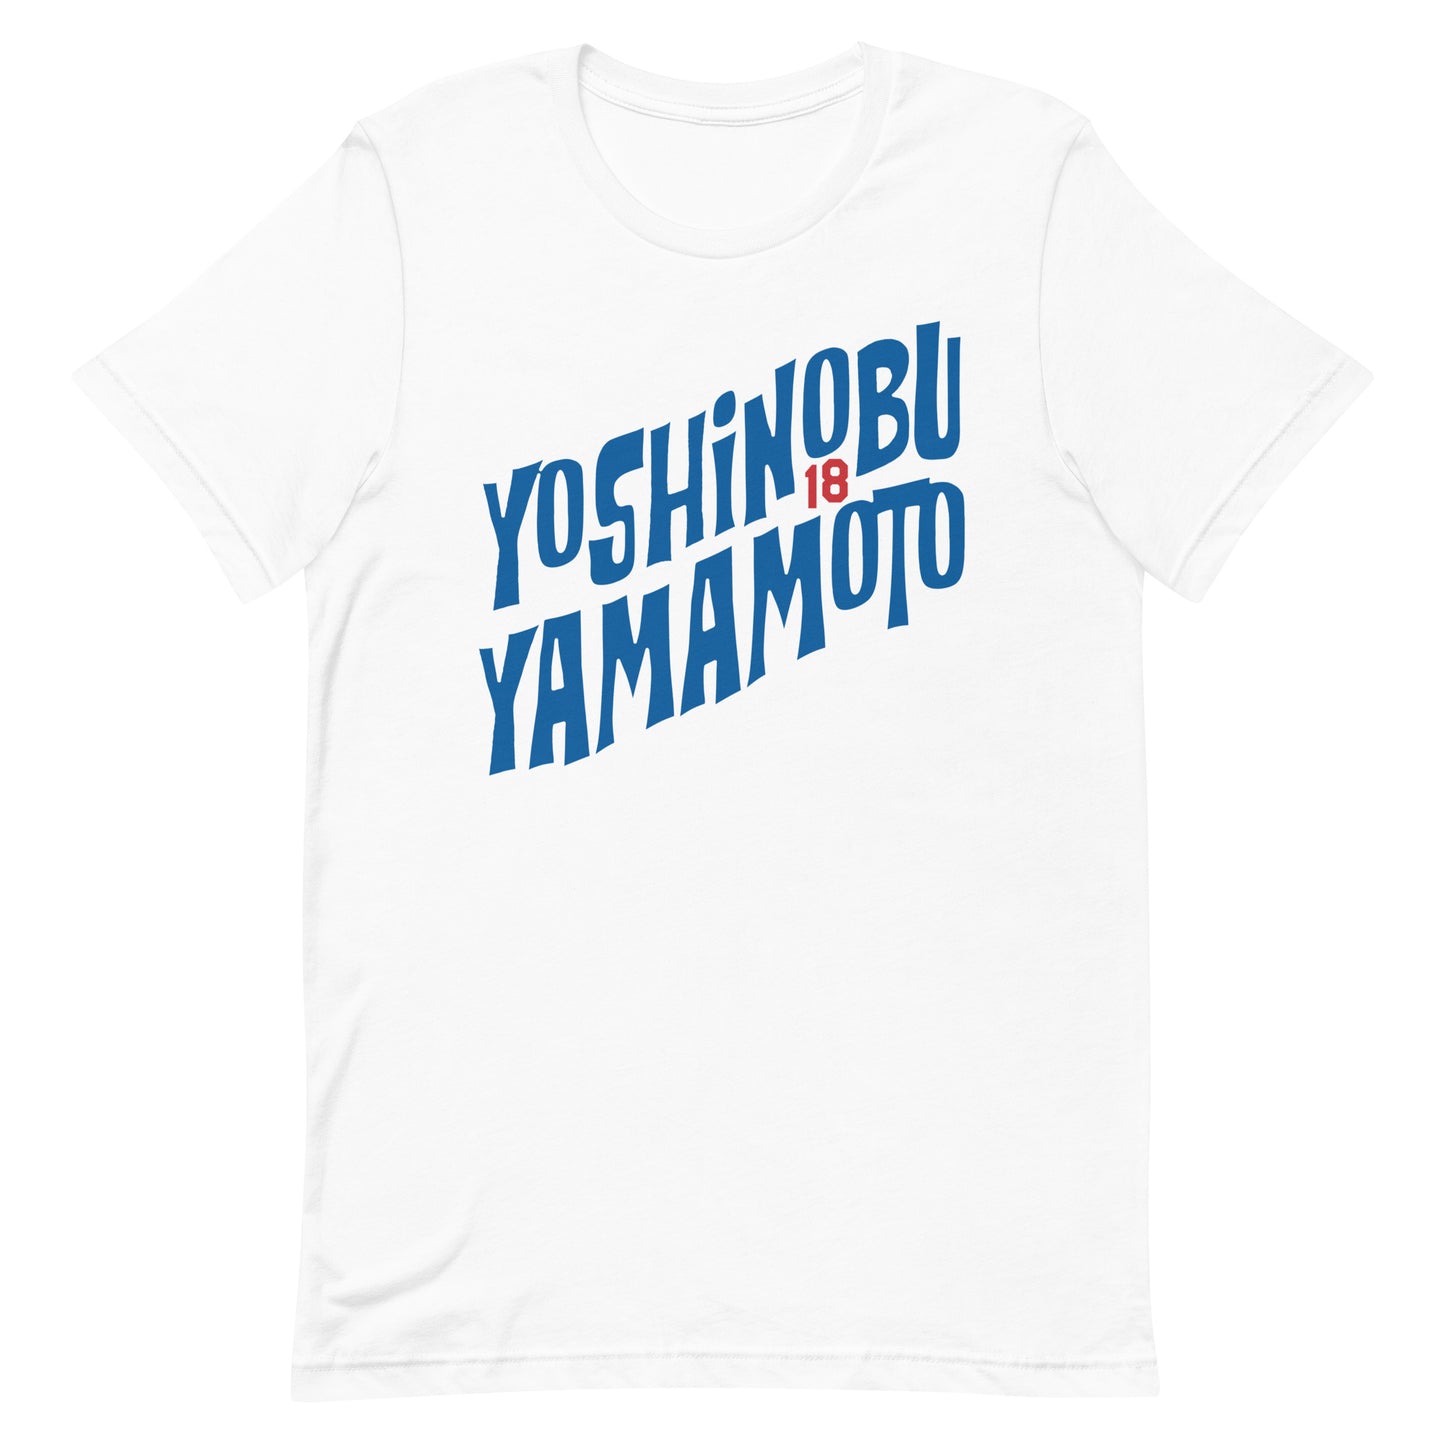 Yoshinobu Yamamoto Los Angeles Dodgers Number 18 Graphic Tee